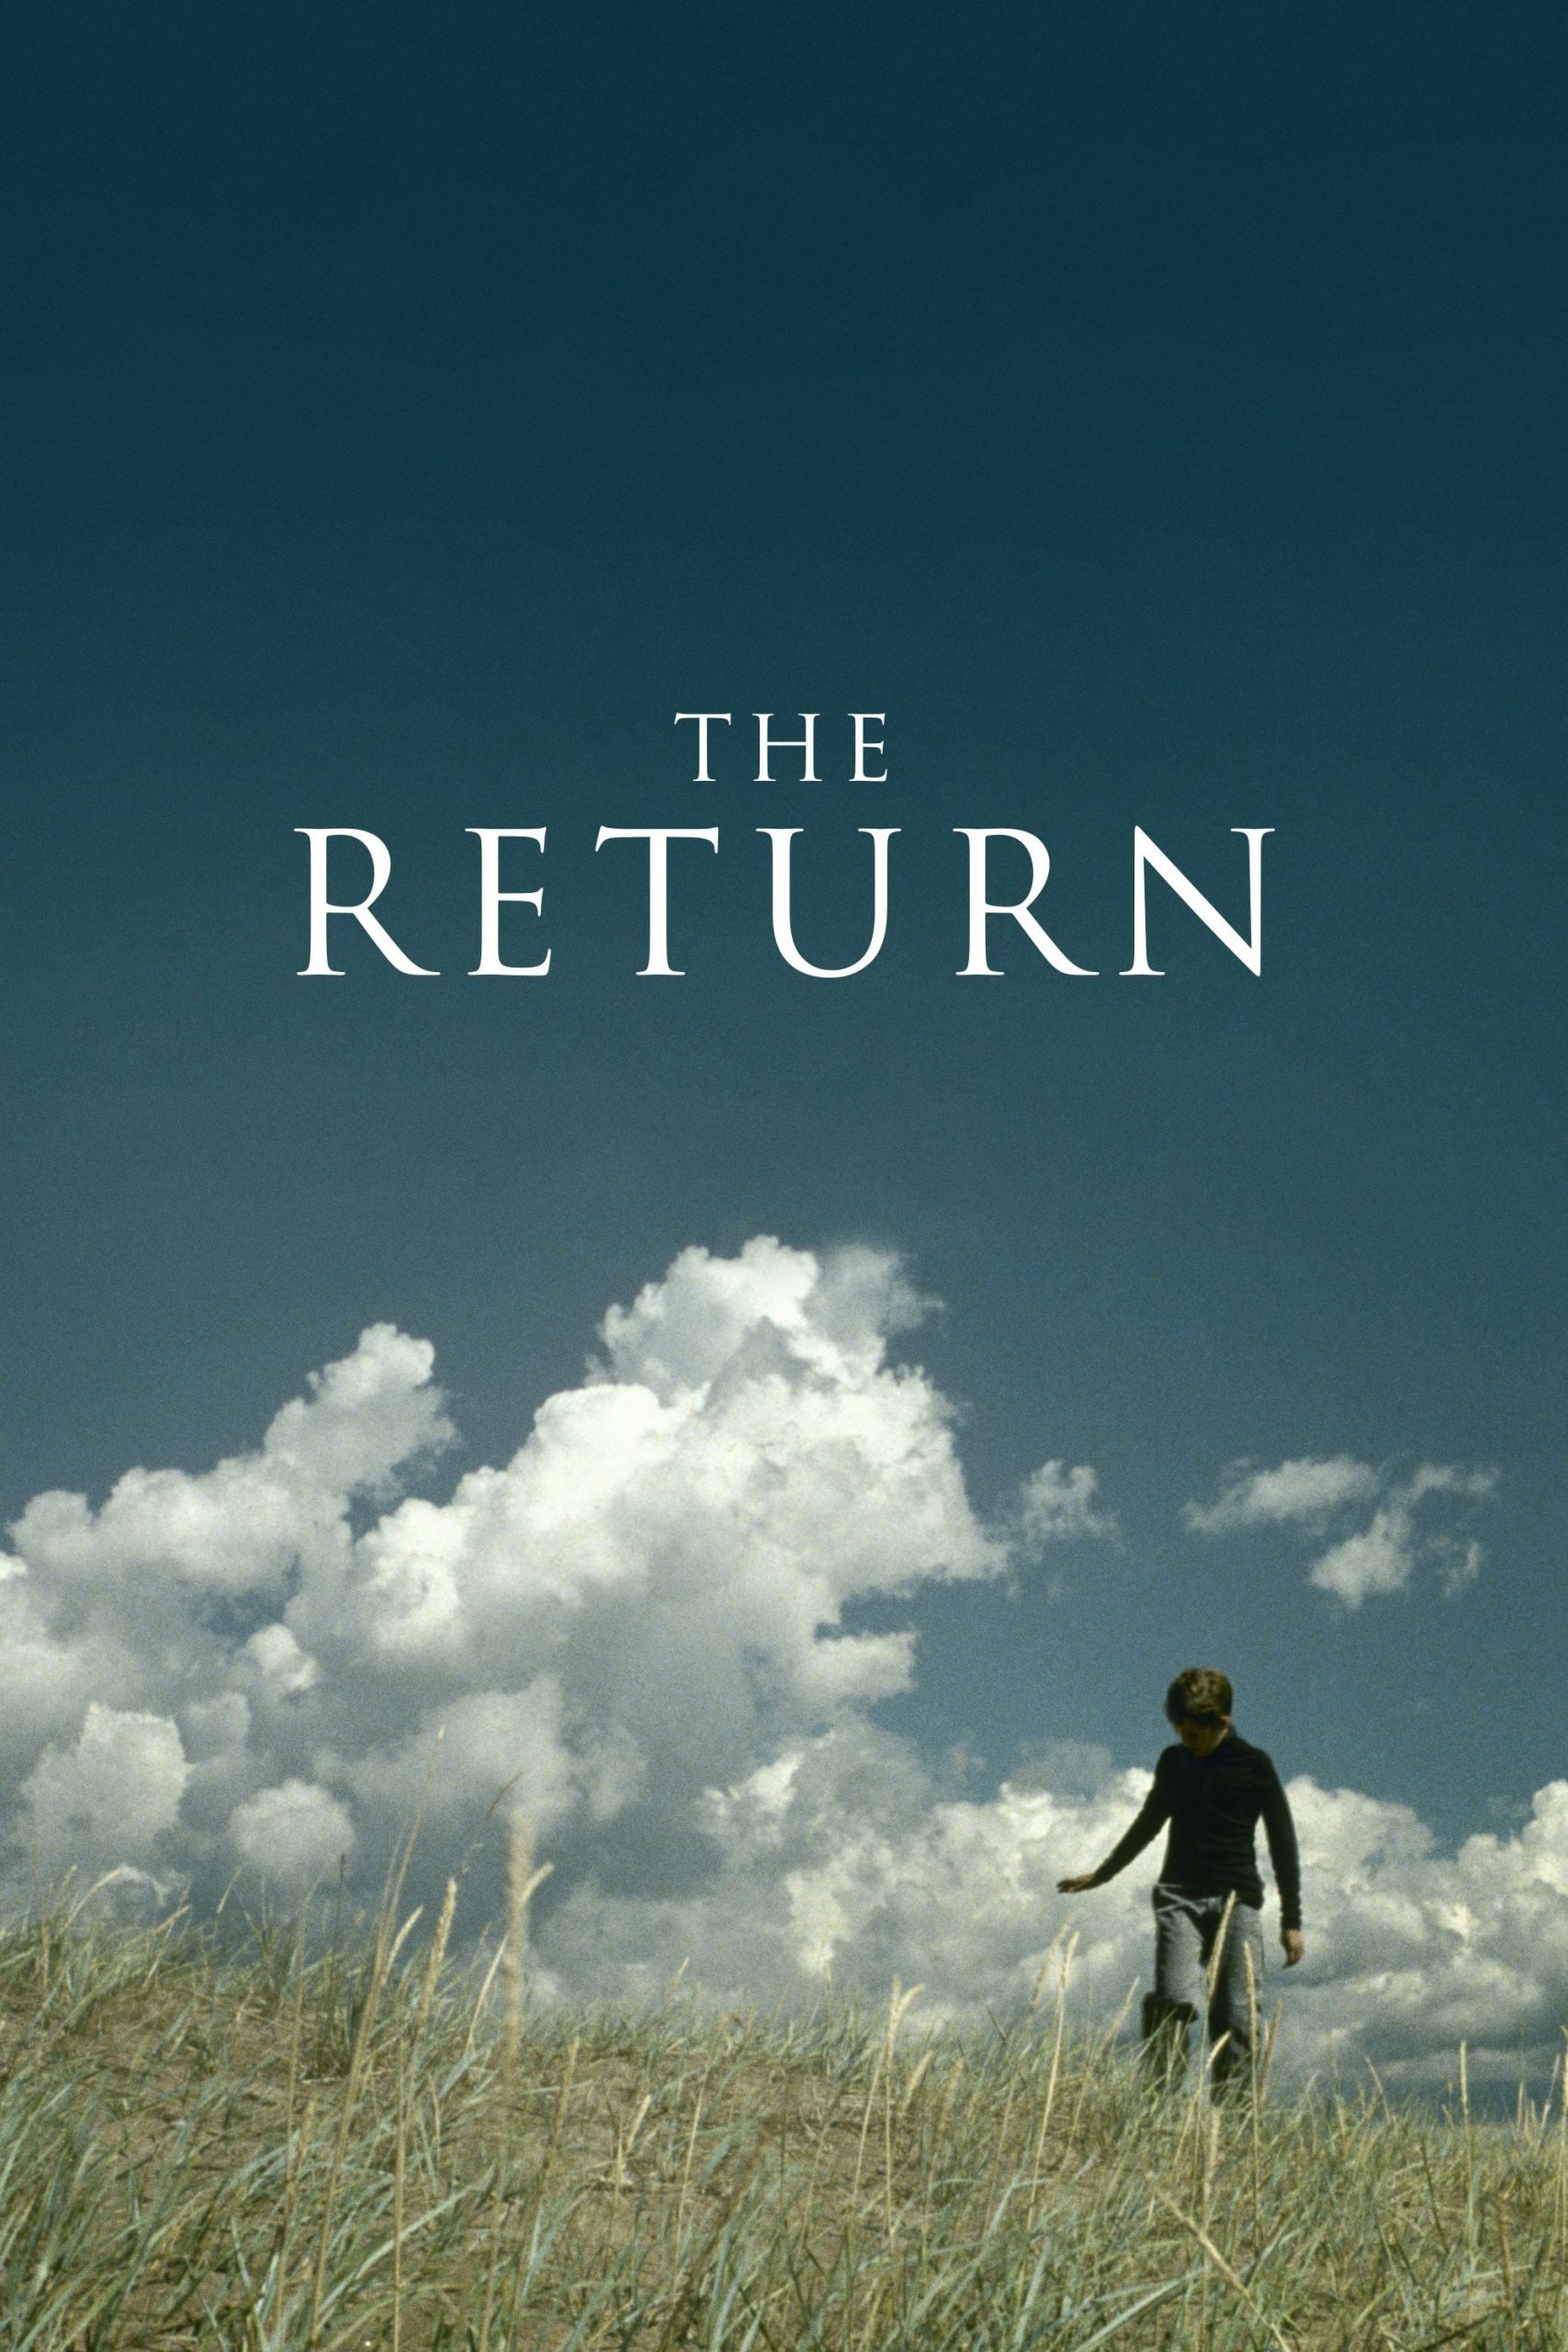 دانلود صوت دوبله فیلم The Return